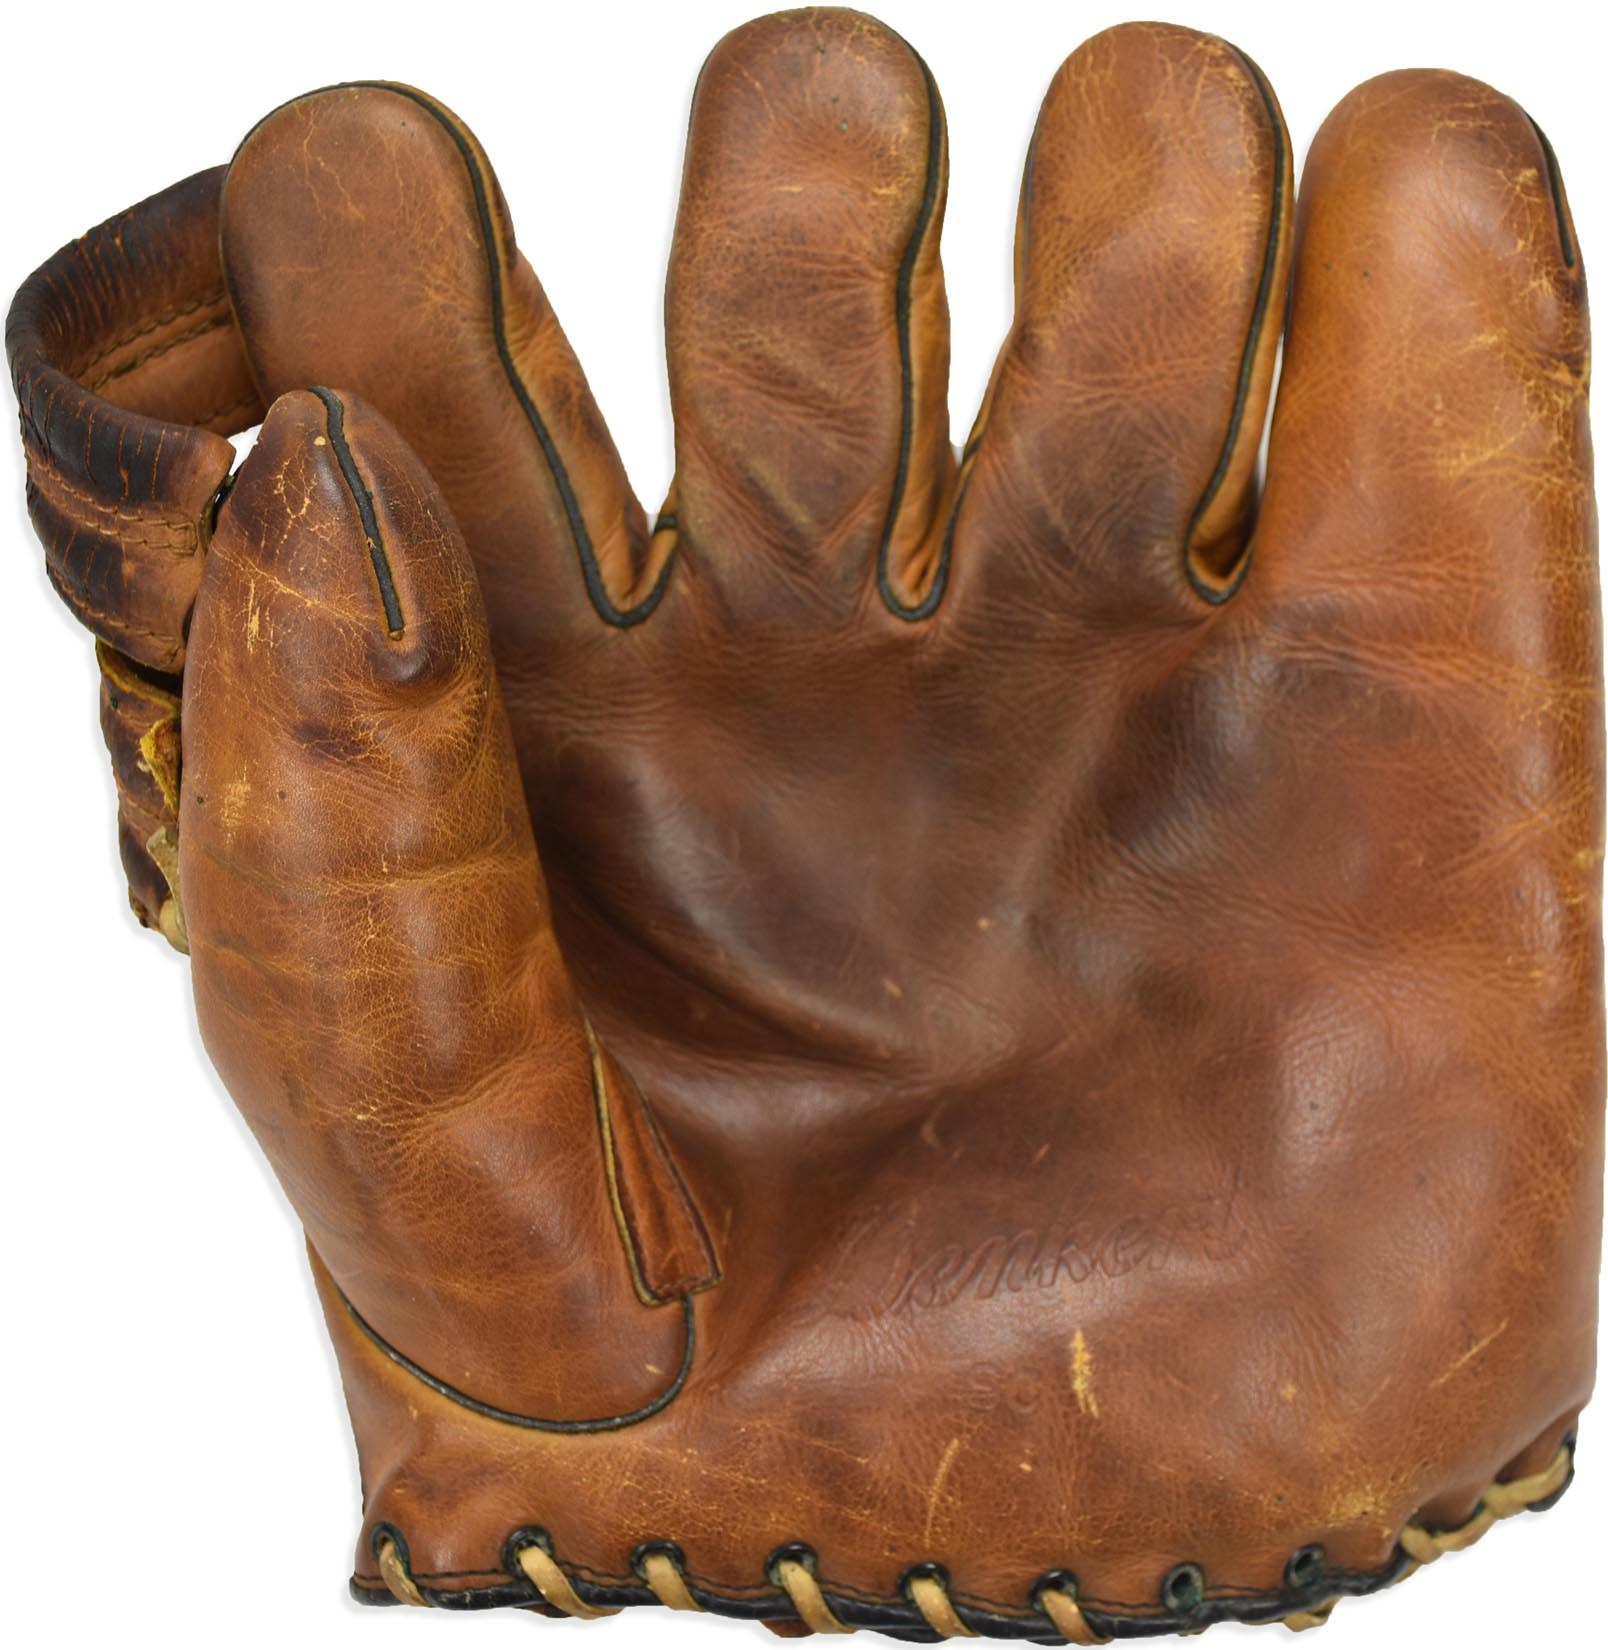 NY Yankees, Giants & Mets - 1938 Spud Chandler New York Yankees Game Used Glove